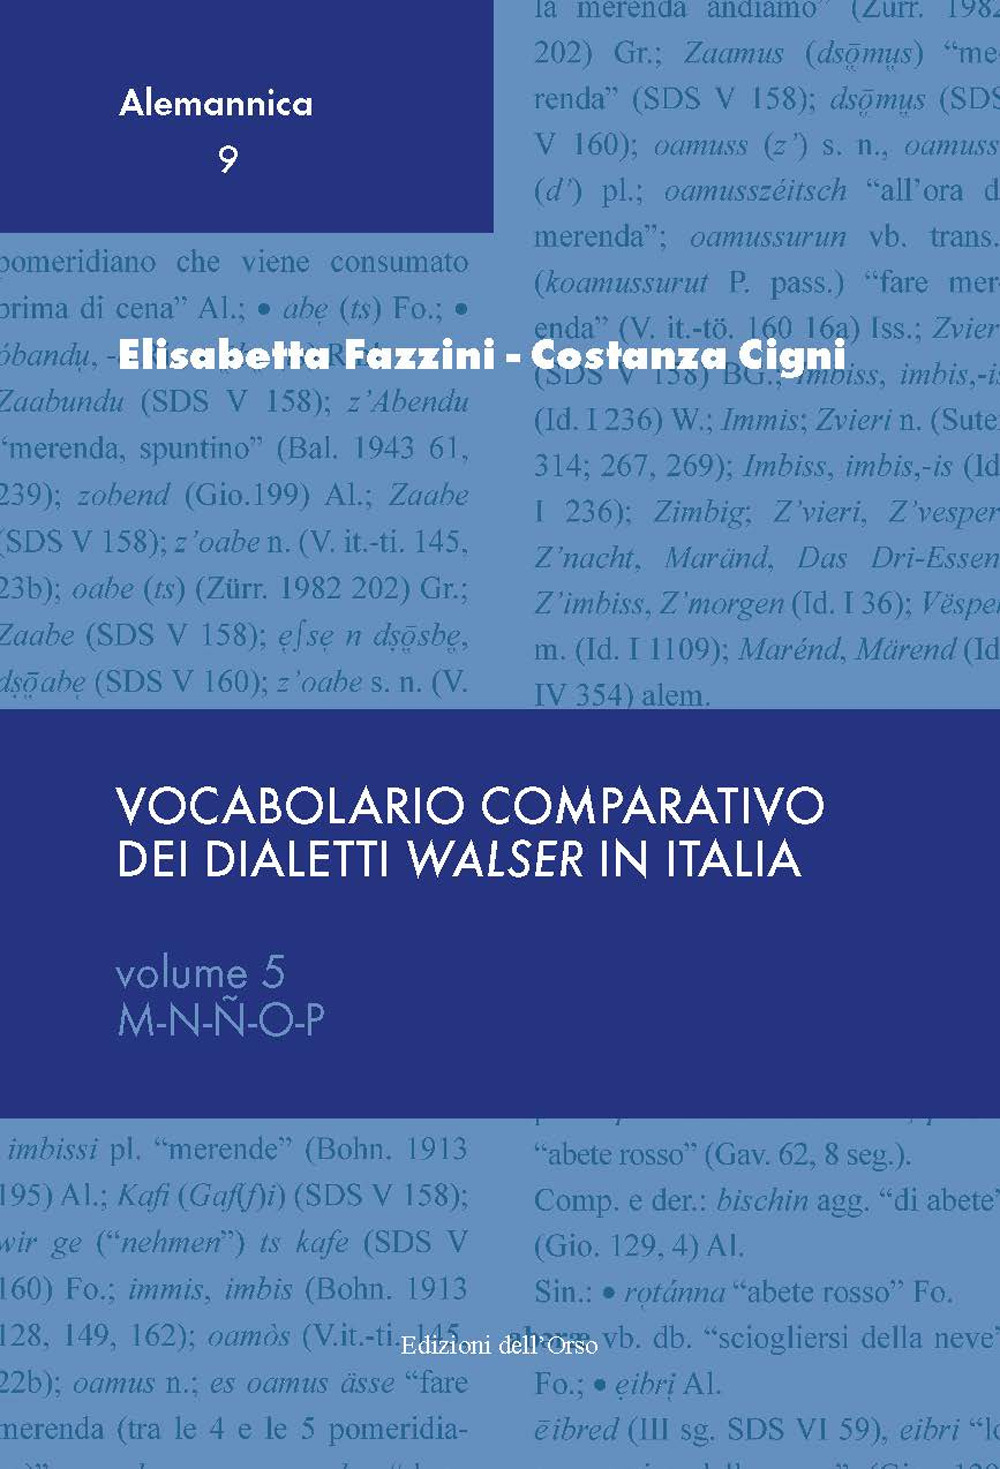 Vocabolario comparativo dei dialetti Walser in Italia. Ediz. critica. Vol. 5: M-N-Ñ-O-P